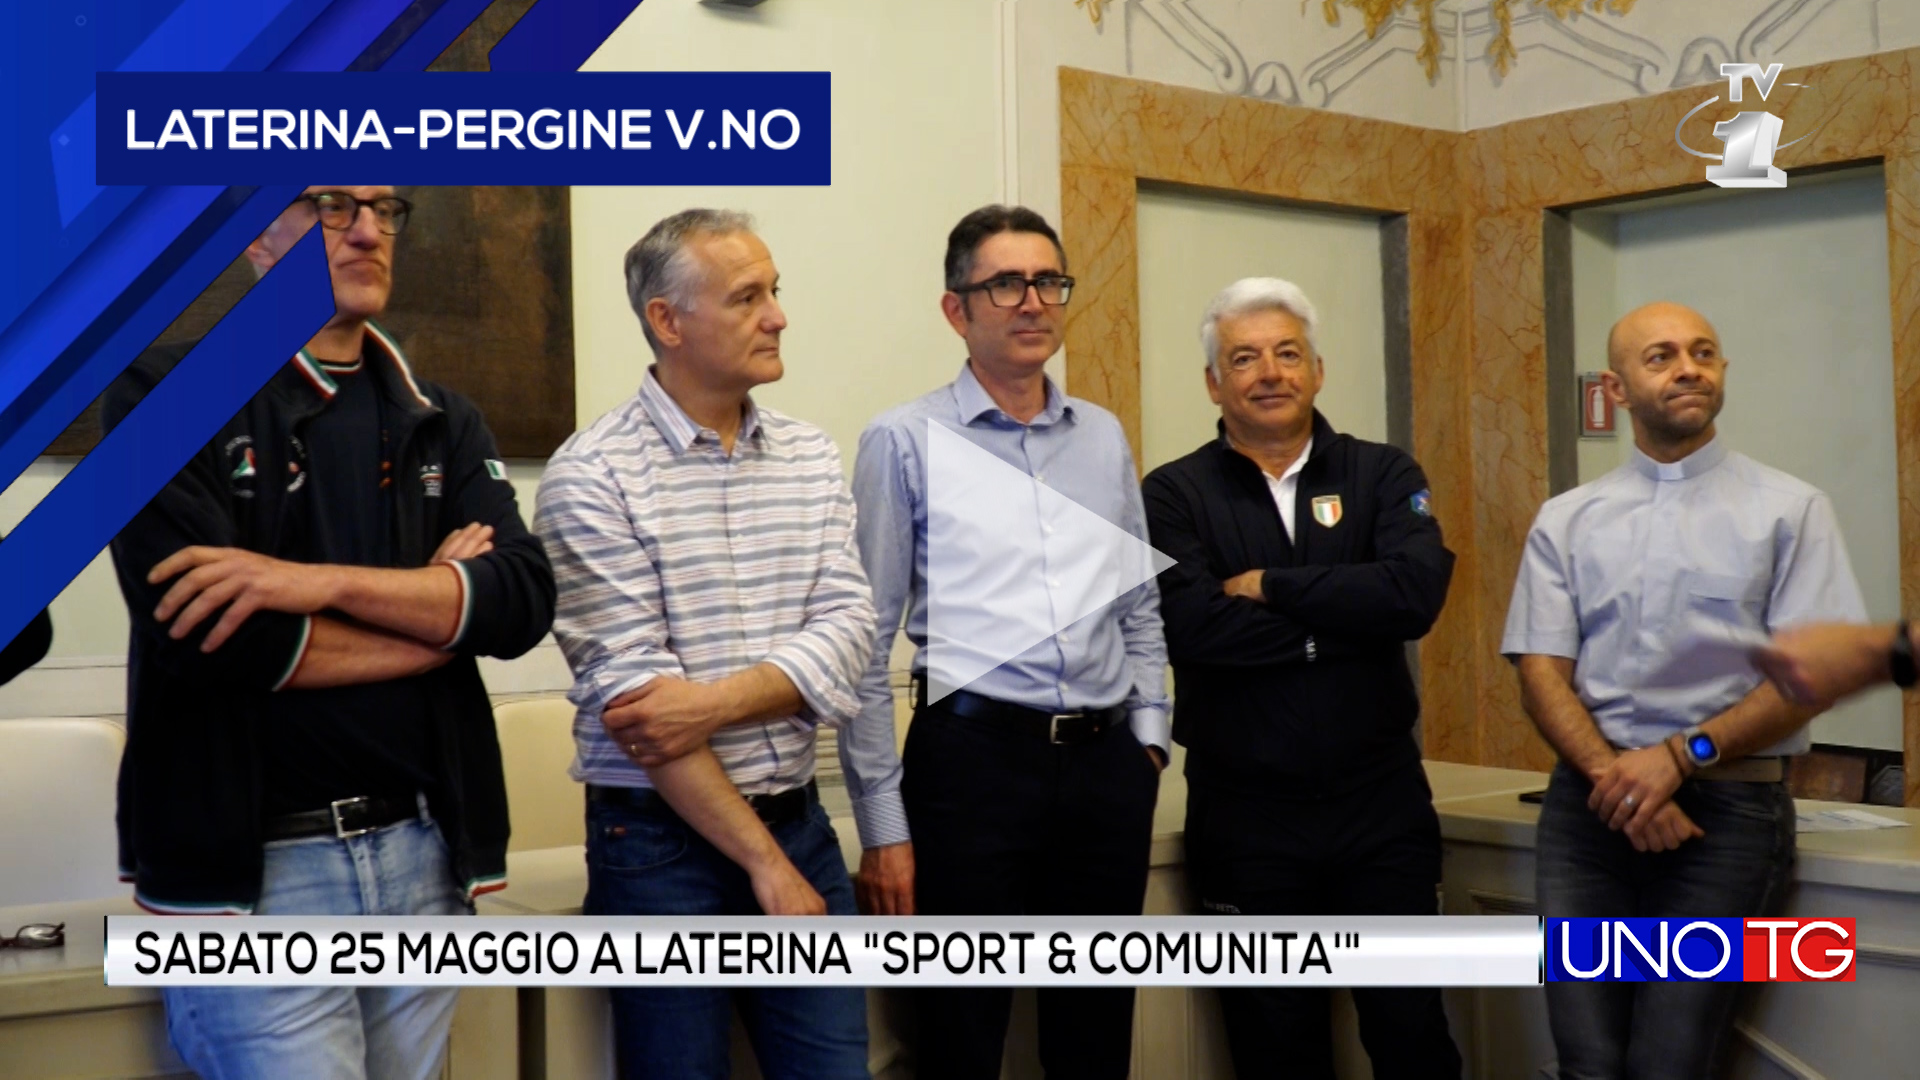 Sabato 25 Maggio a Laterina "Sport & Comunità"